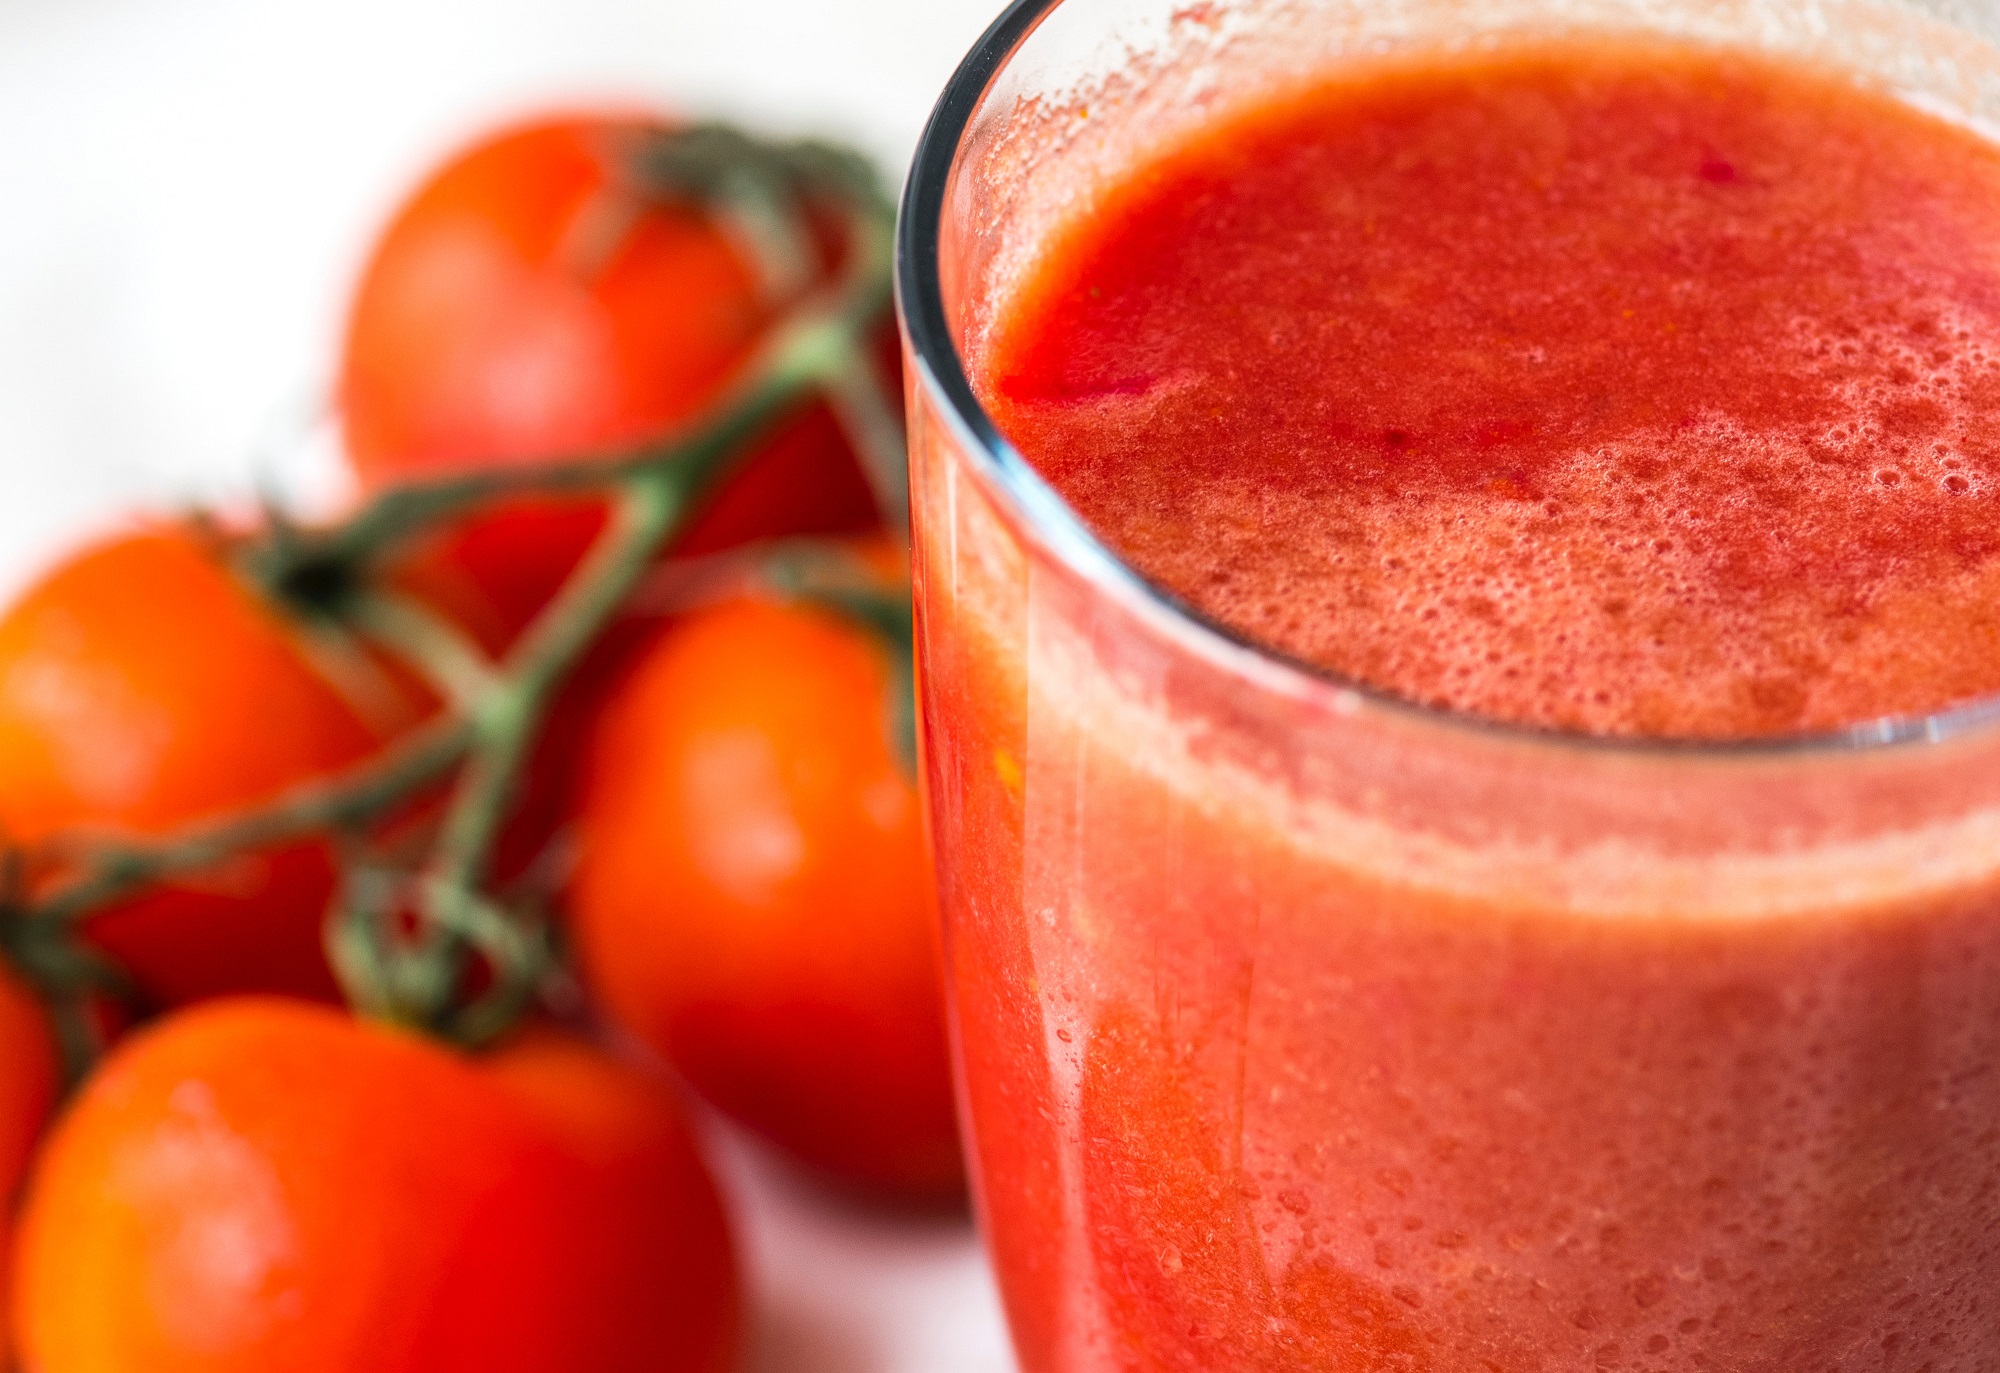 Koktajl pomidorowy przyspieszający przemianę materii